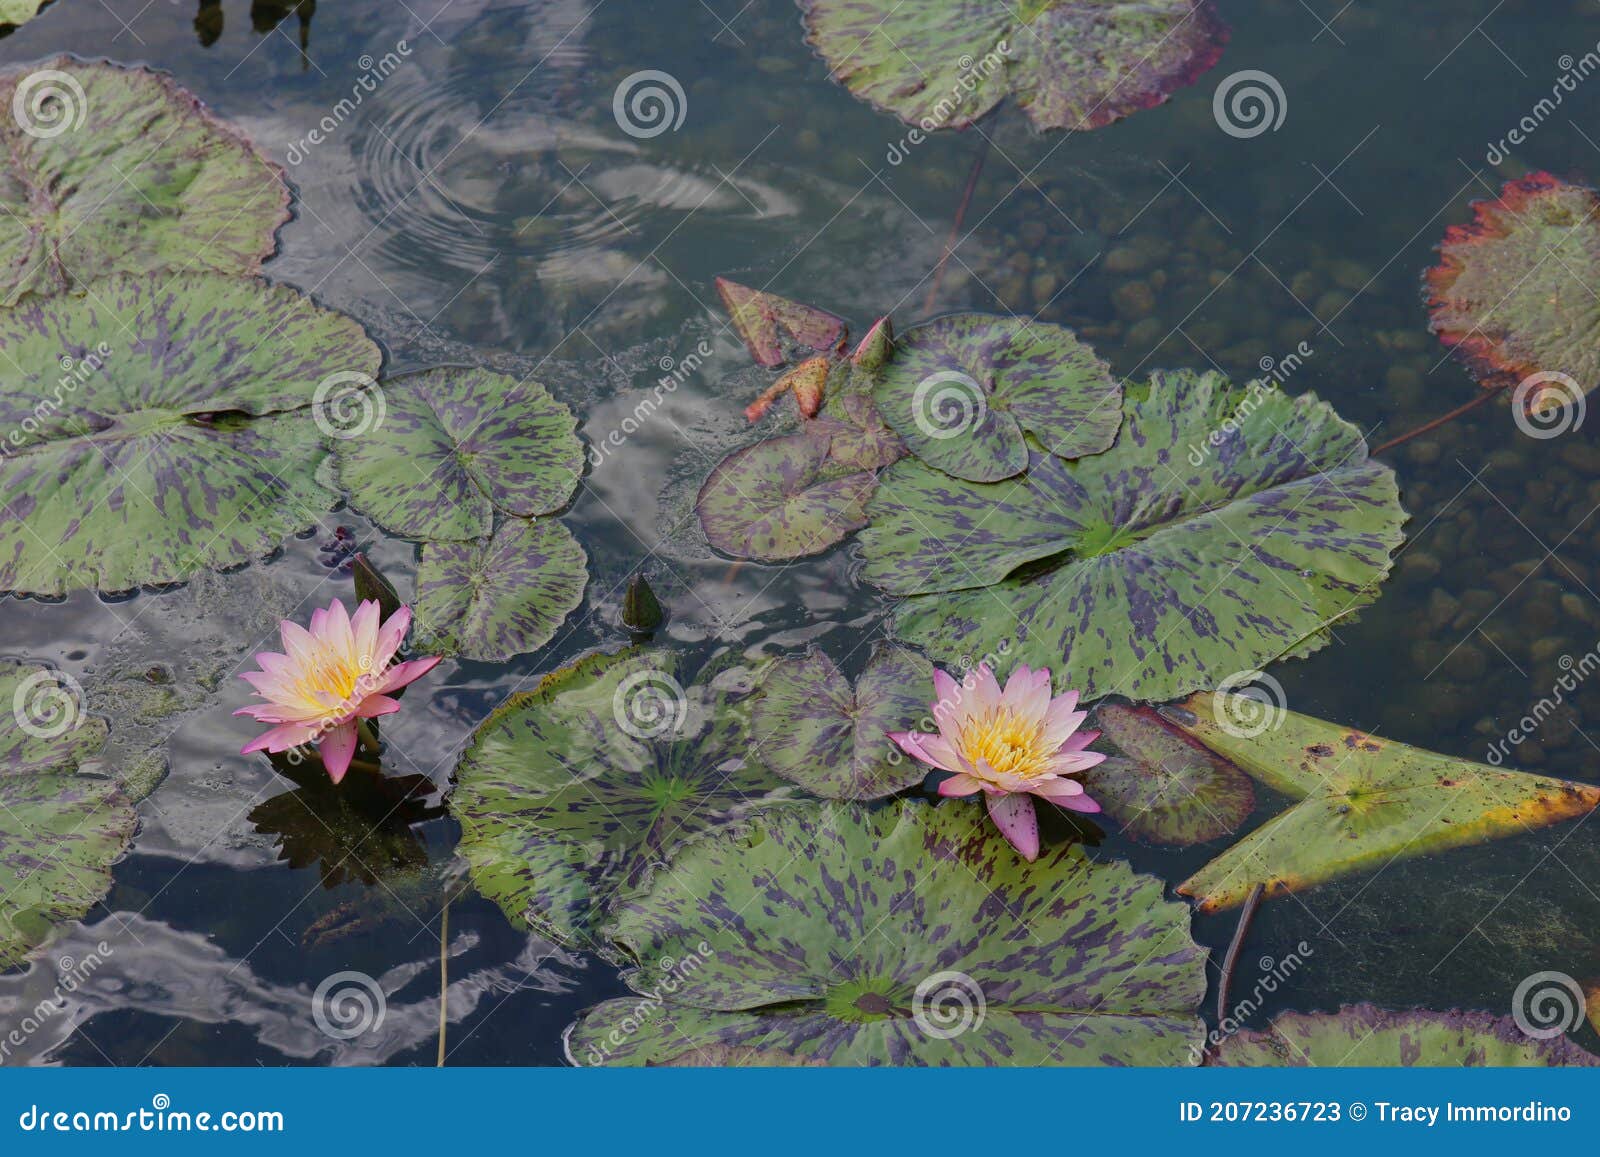 Dos Flores De Lirio De Agua Rosa Y Colchonetas De Lirio Flotando En Un  Estanque Poco Profundo Imagen de archivo - Imagen de cierre, llenado:  207236723